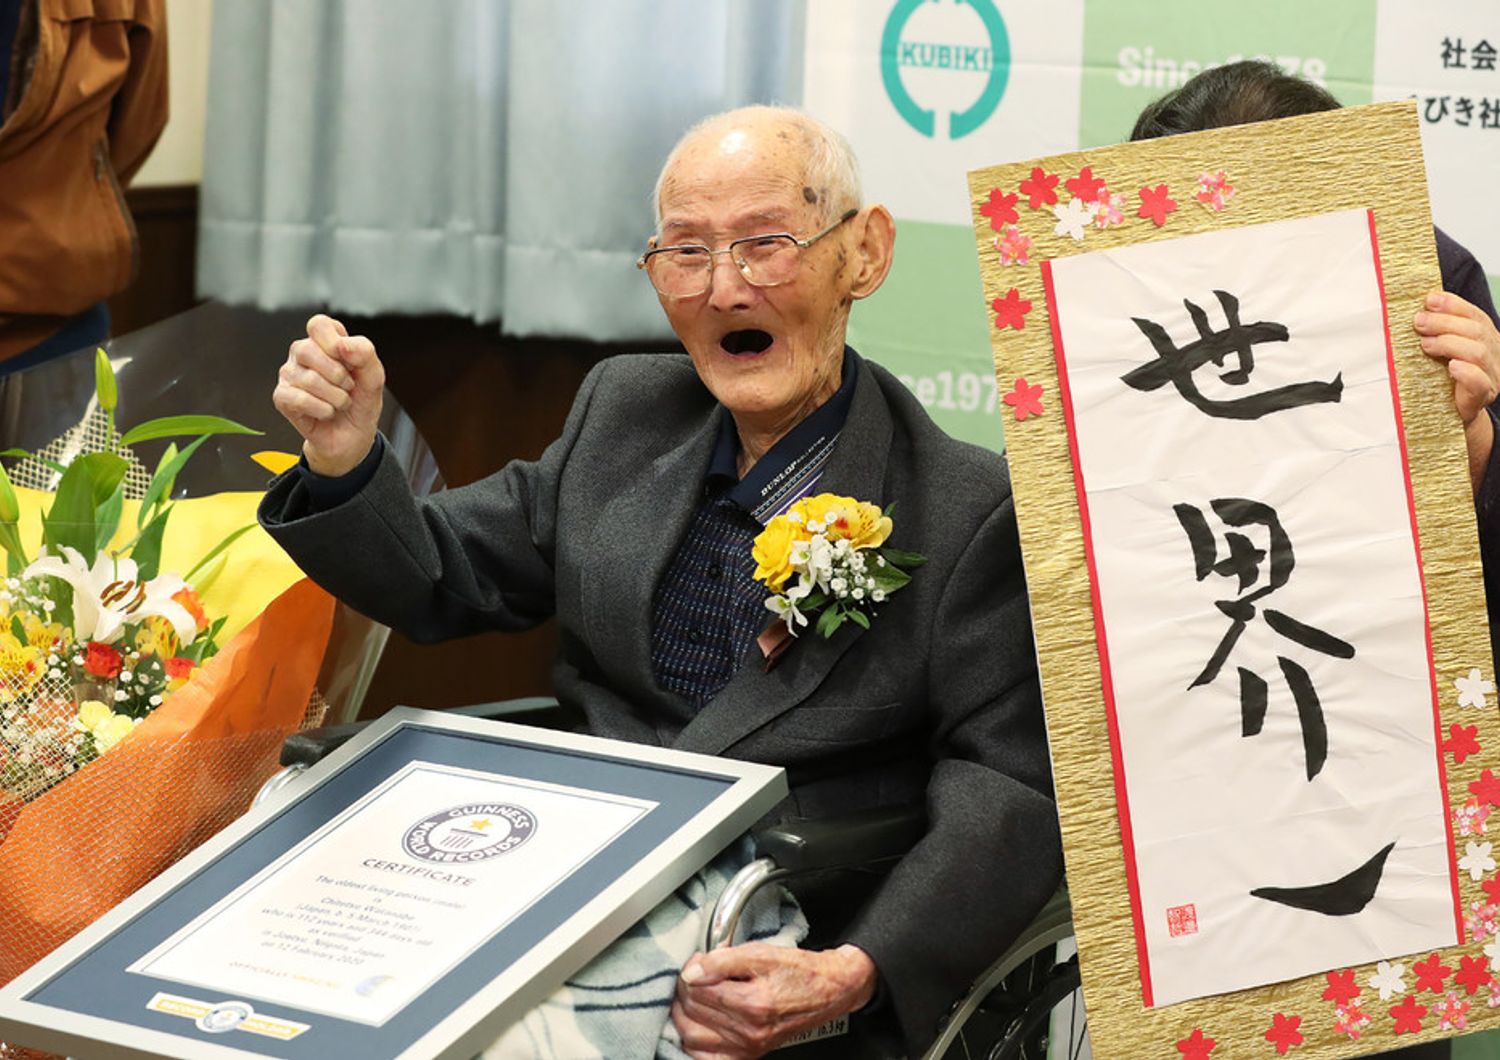 Chitetsu Watanabe &egrave; l'uomo pi&ugrave; vecchio del mondo secondo il Guinness dei Primati